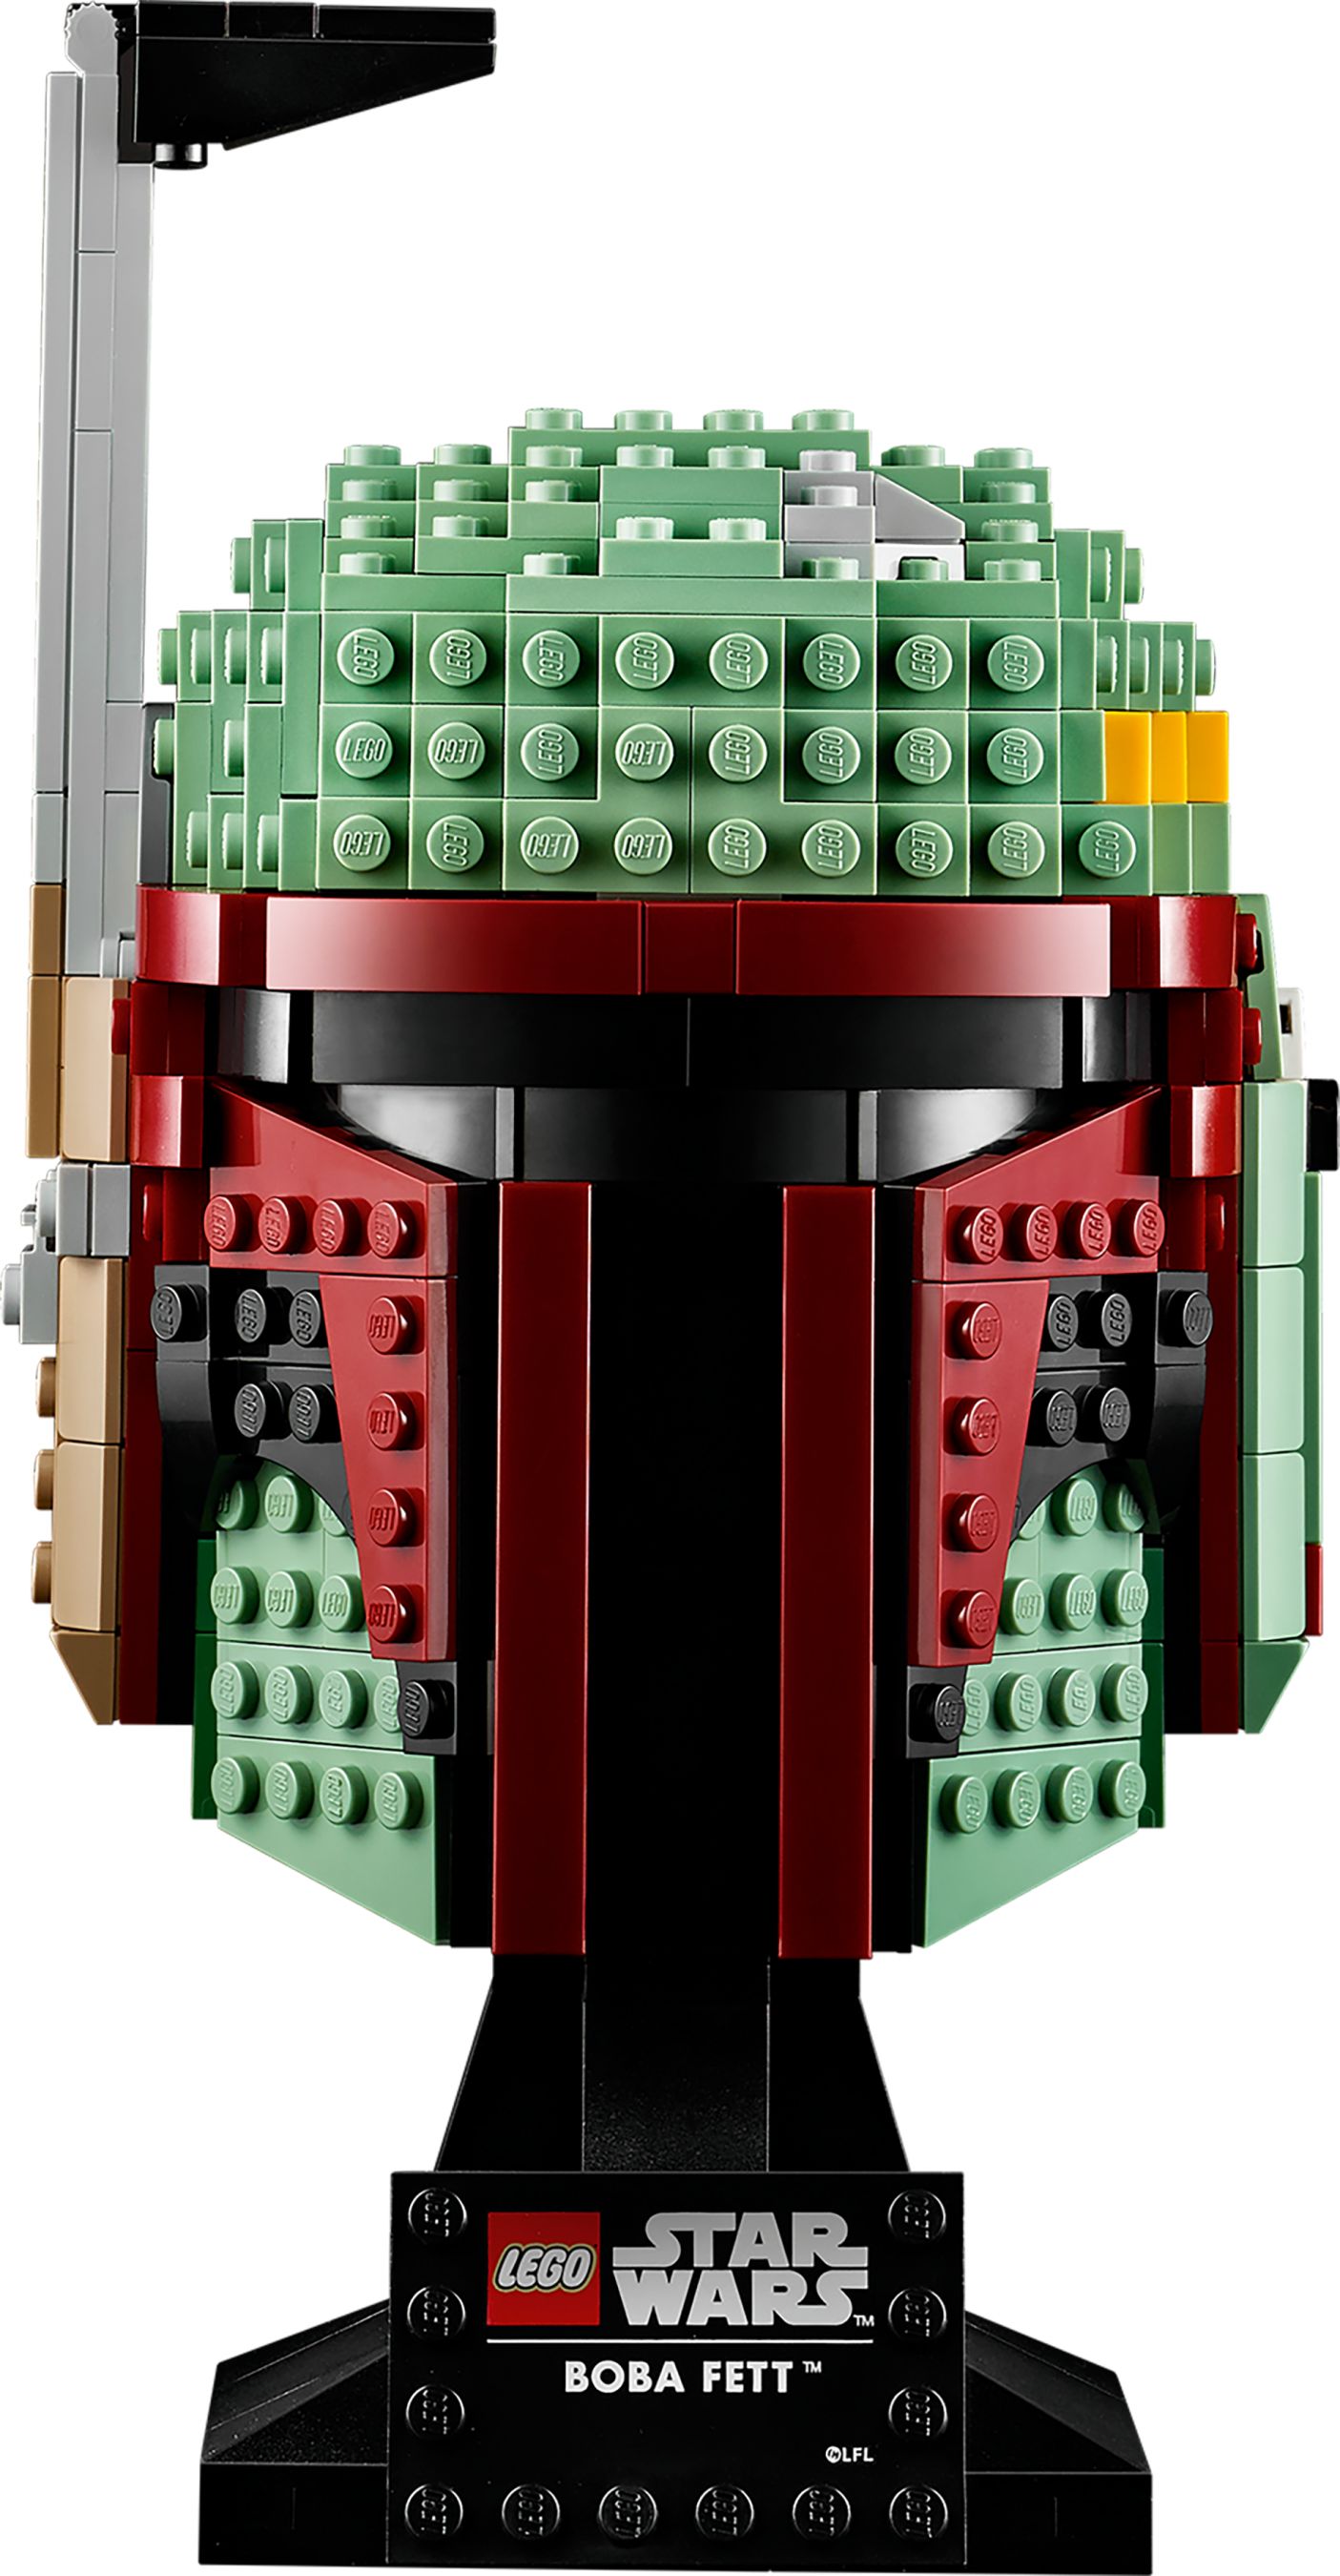 LEGO Star Wars 75277 Boba Fett Helm LEGO_75277_alt4.jpg